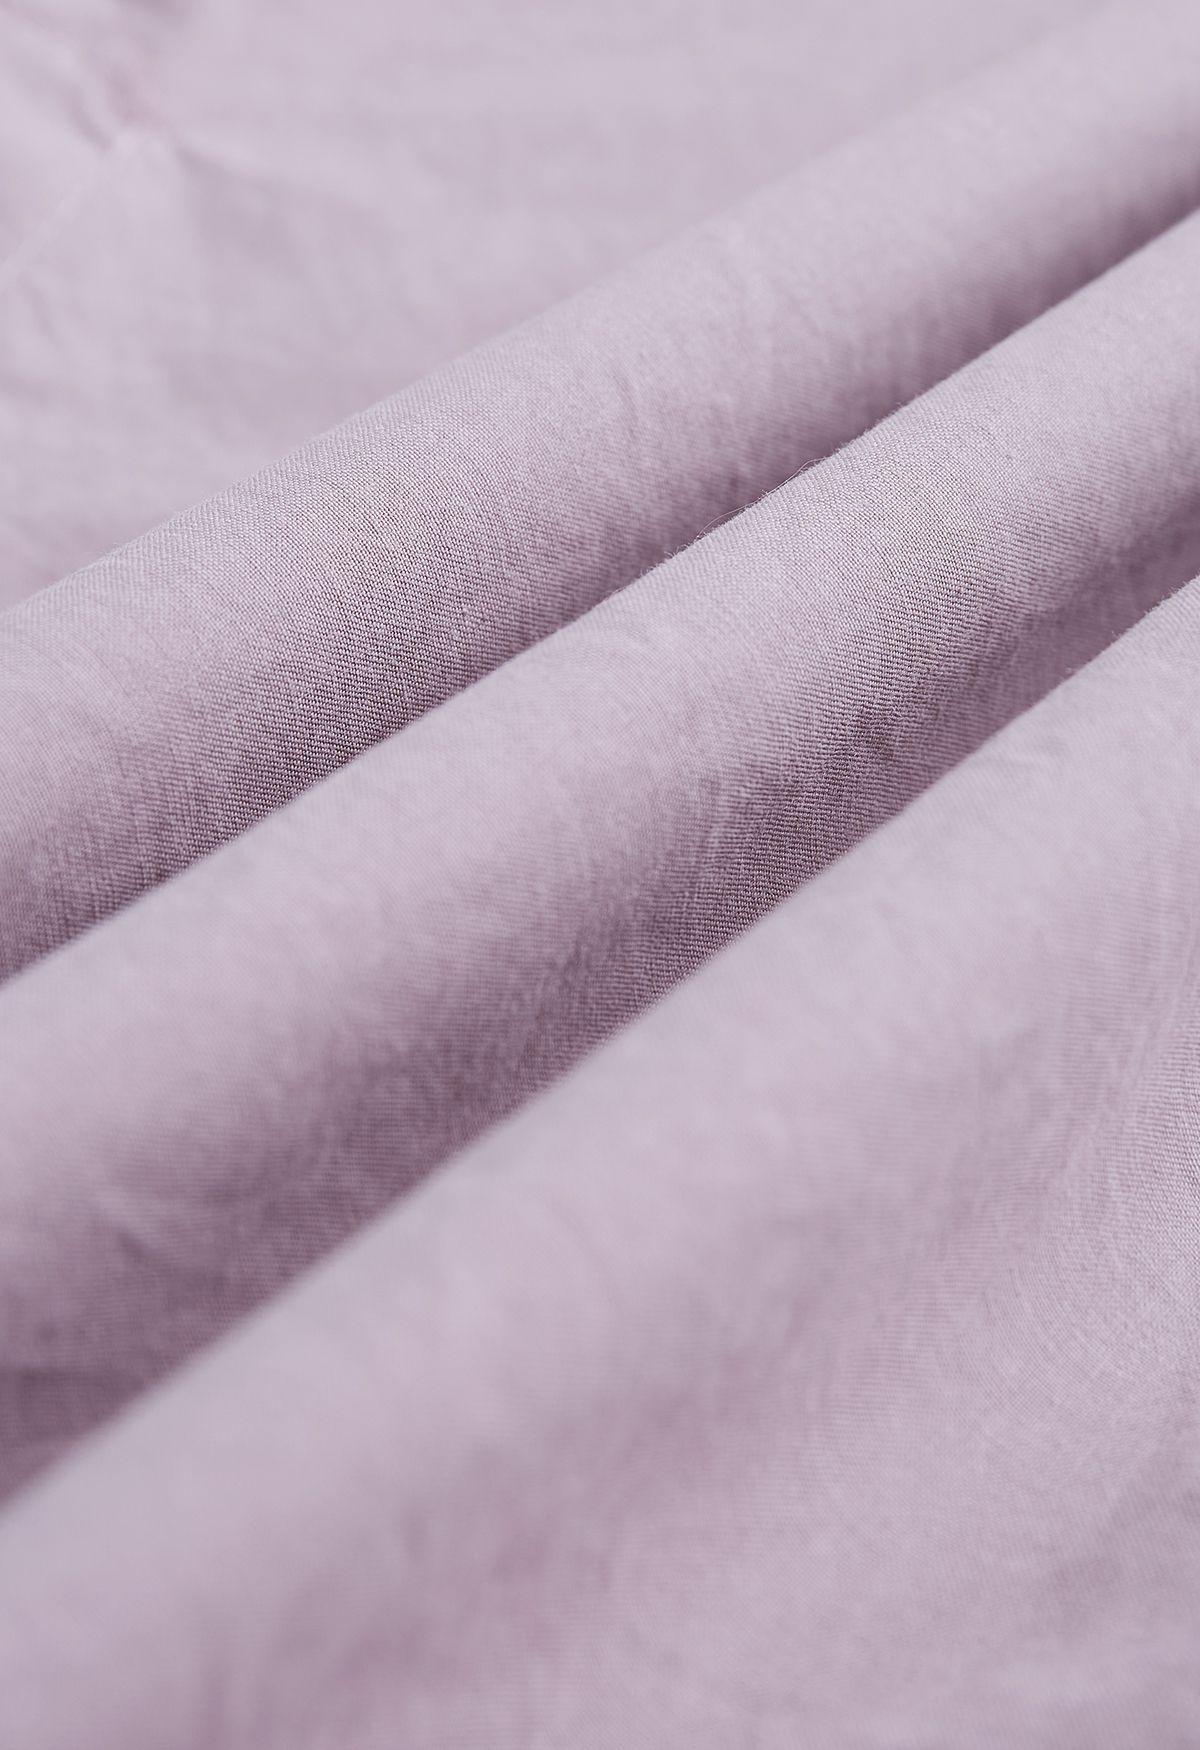 Camisa de algodón con botones y mangas con cordón en rosa polvoriento